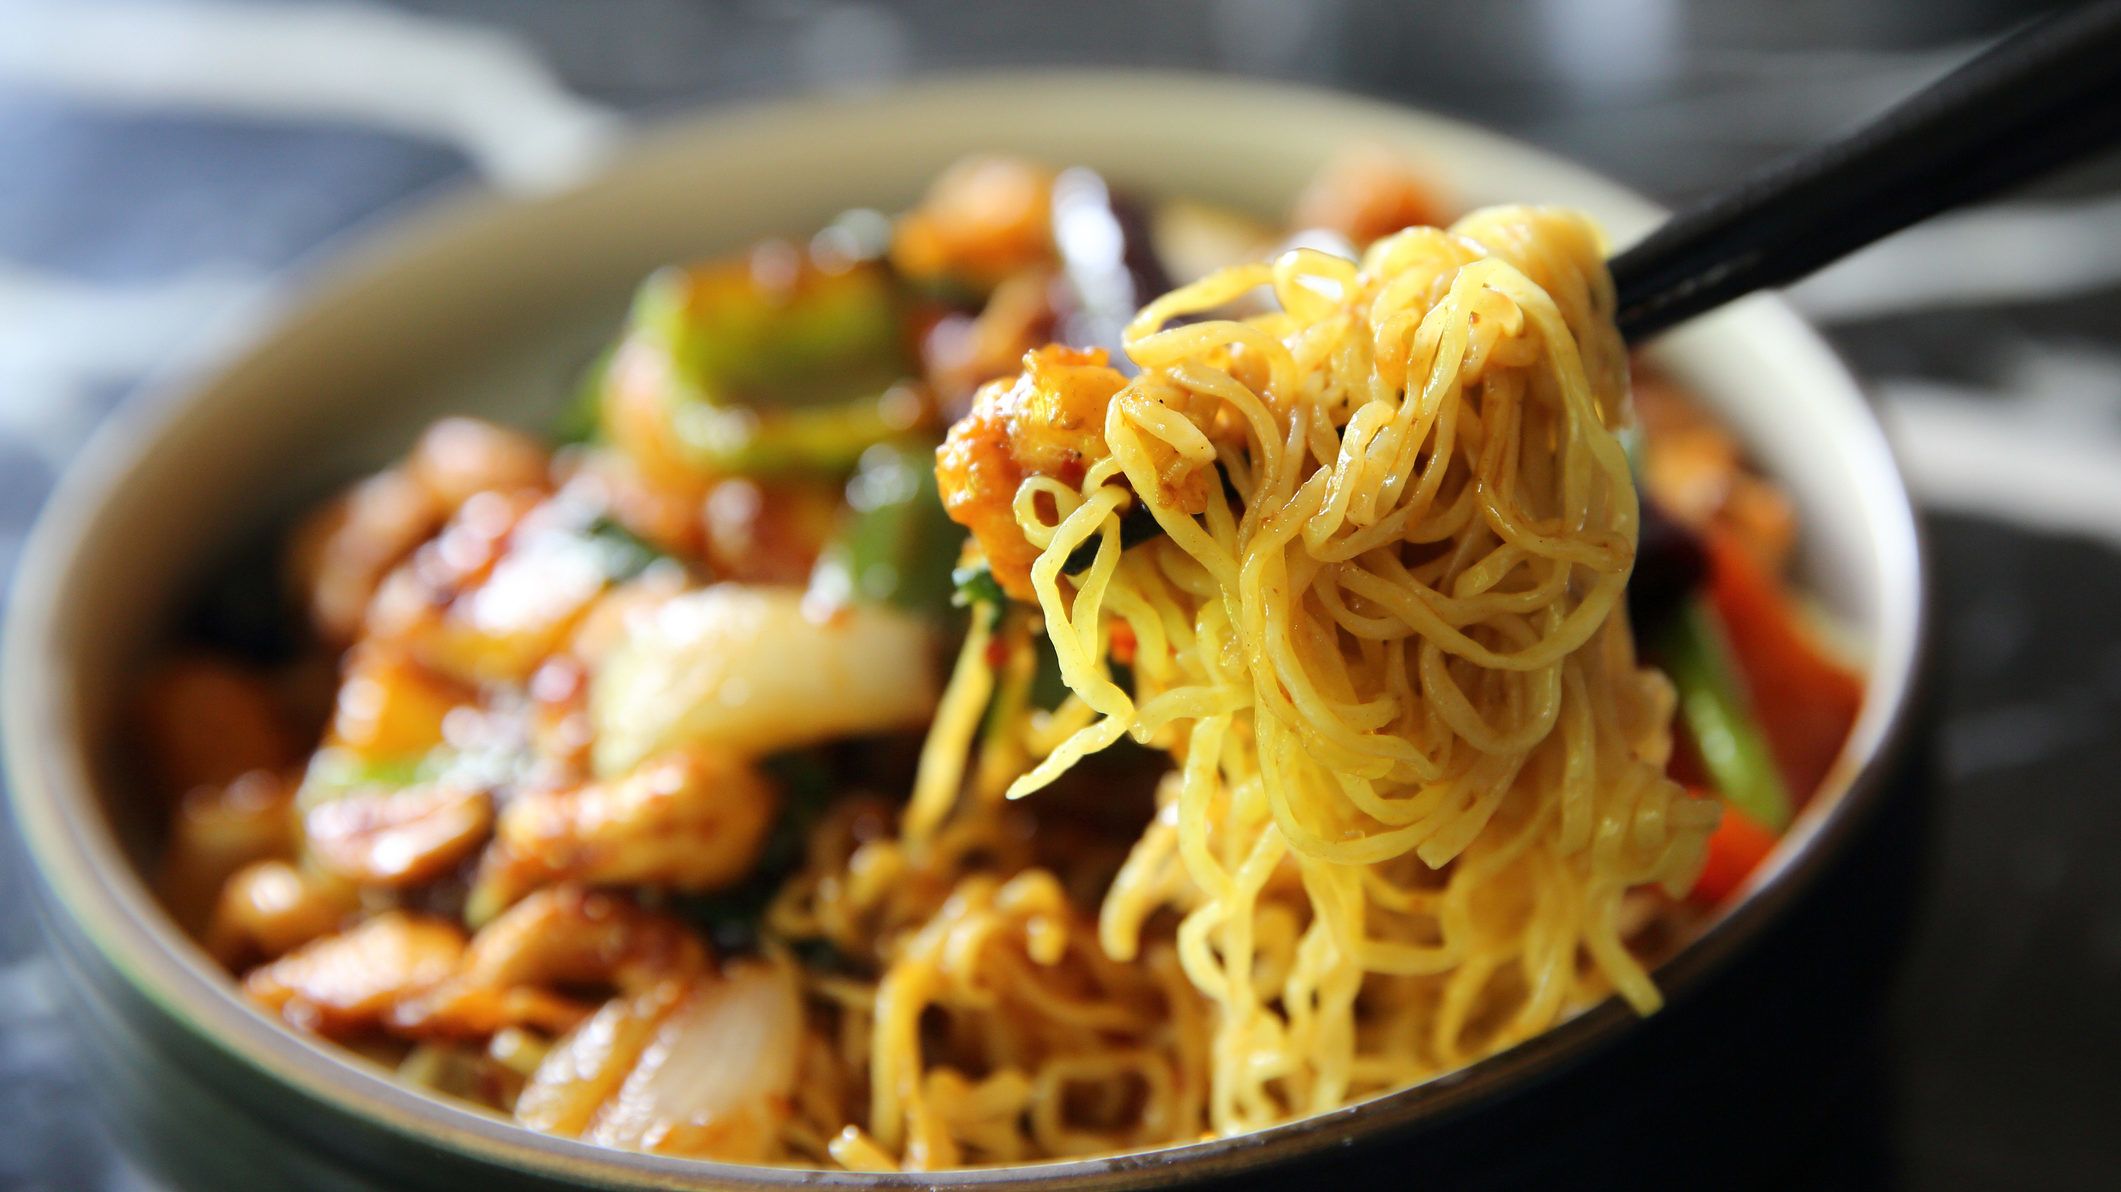 Droggal dobta fel ételeit egy kínai étterem, hogy a függővé vált vendégek visszatérjenek